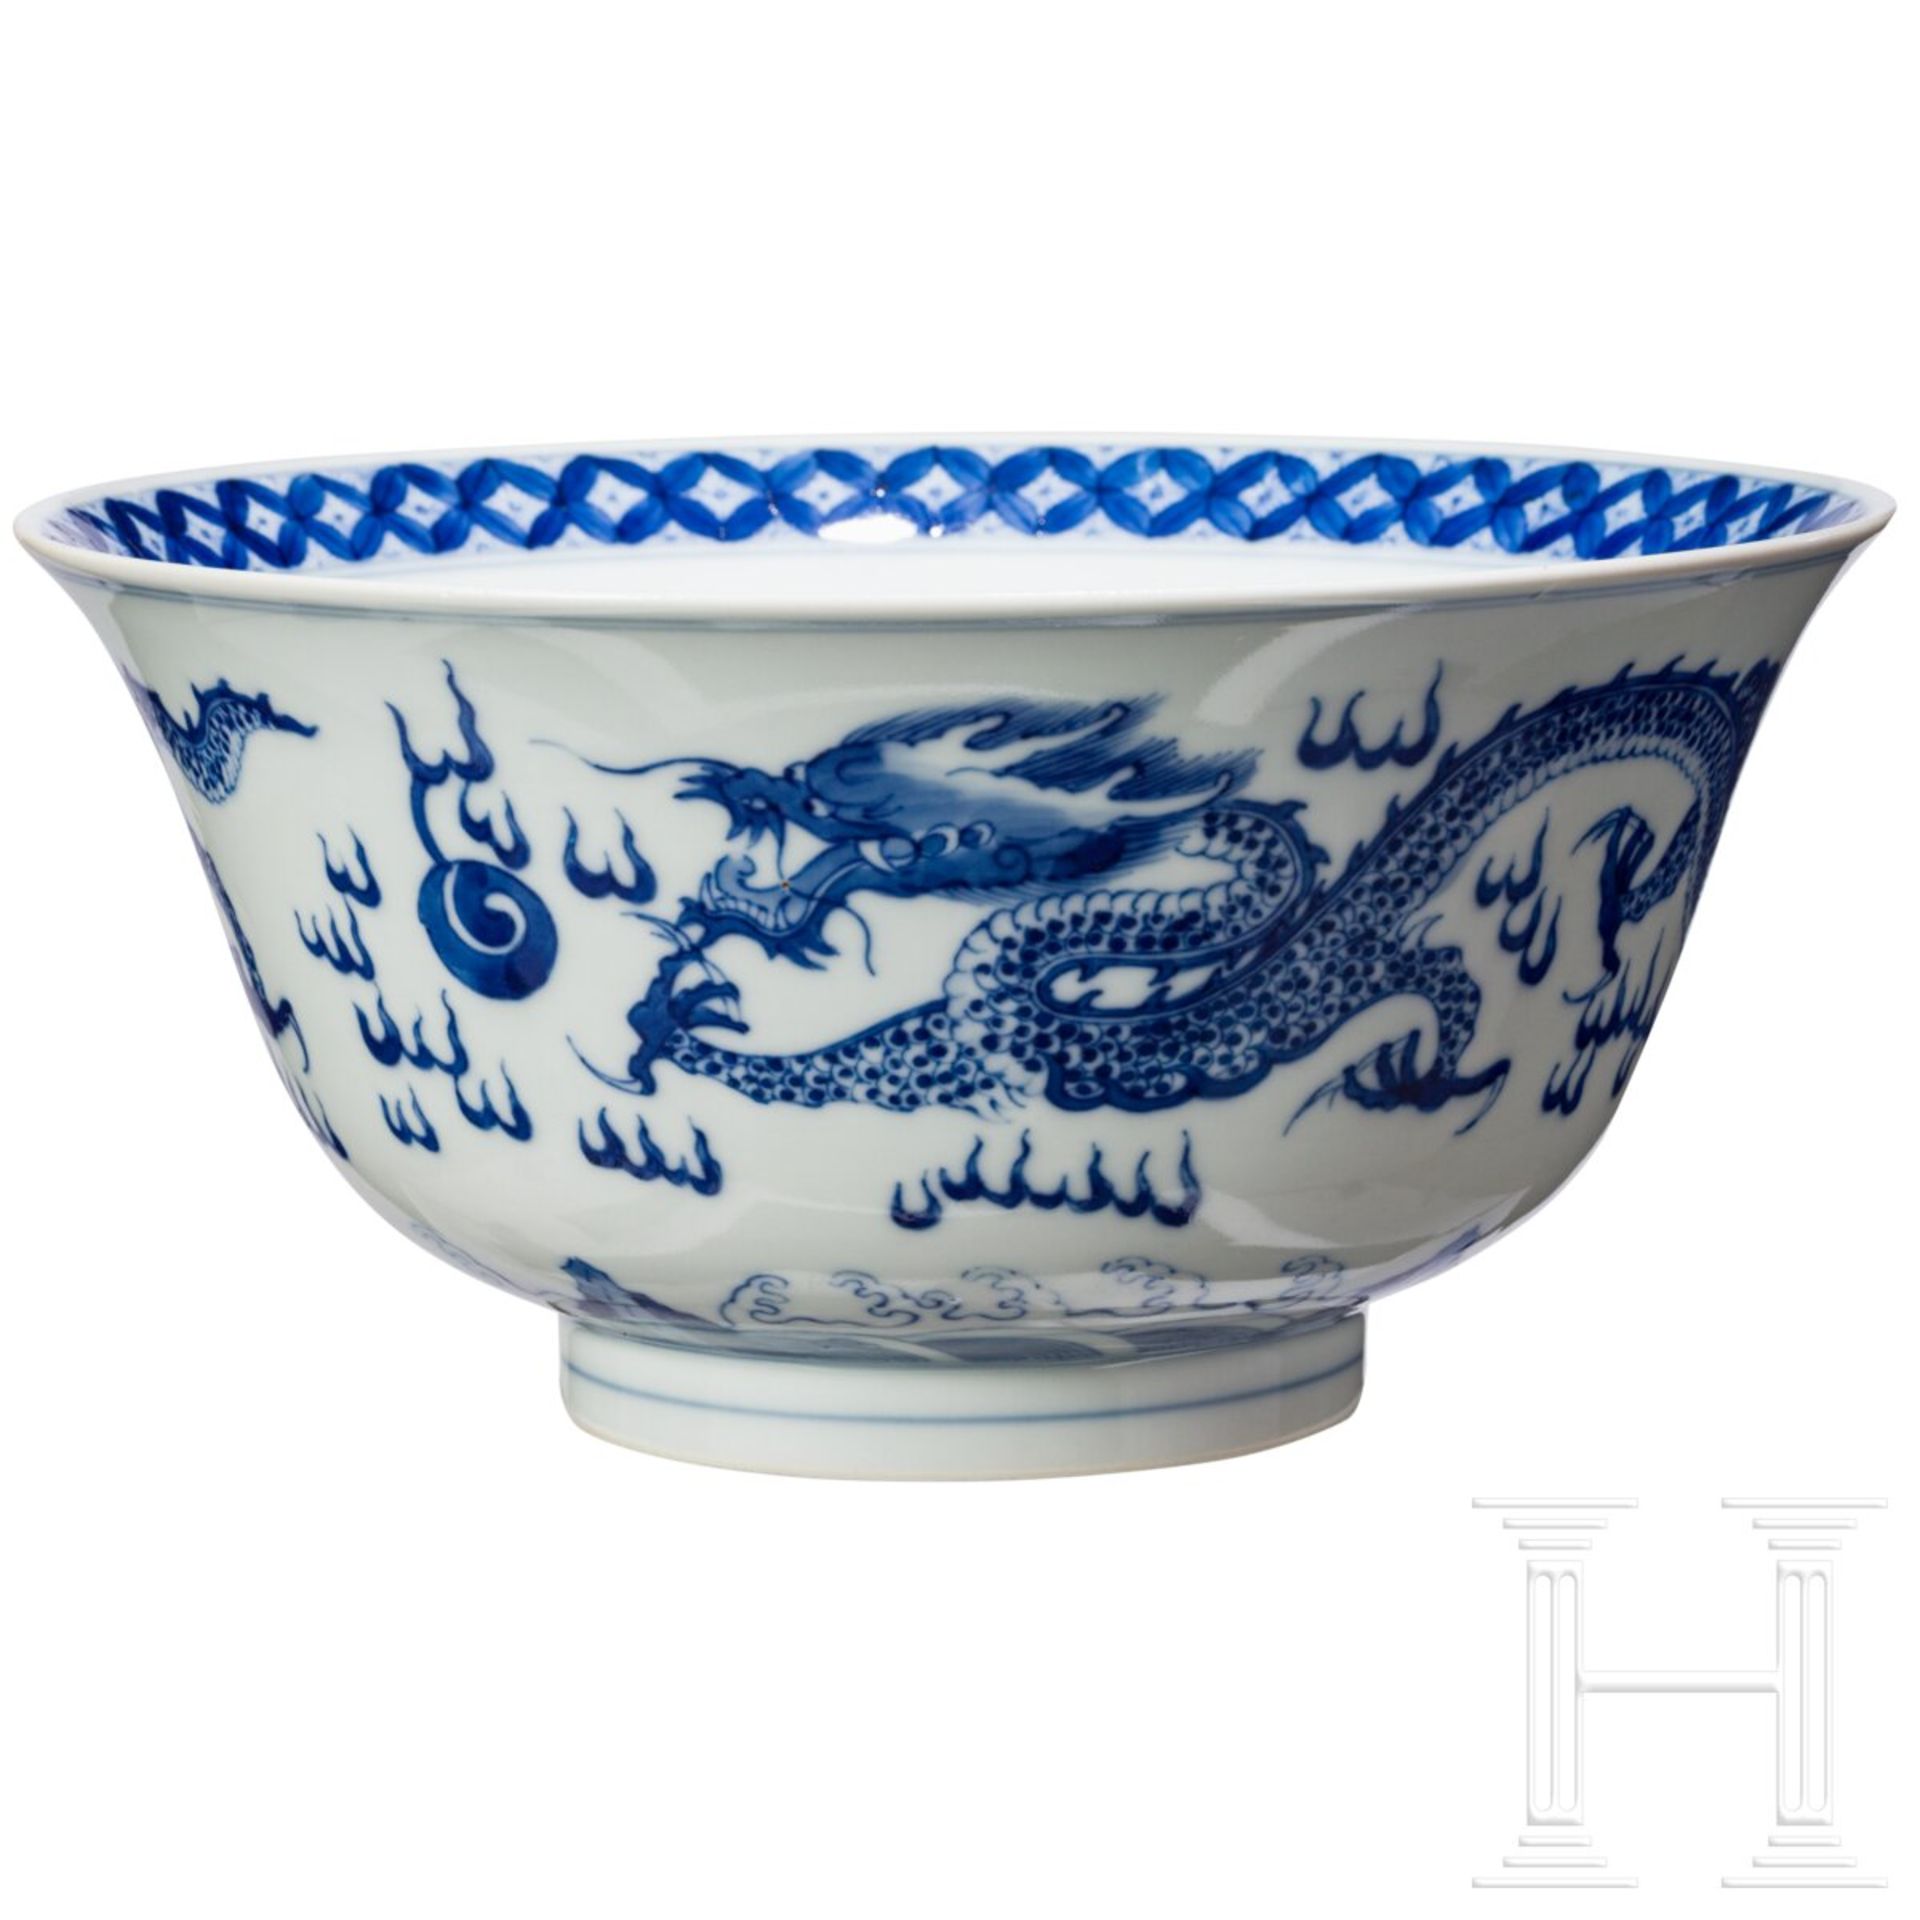 Blau-weiße Schale mit Drachen, China, wohl Kangxi-Periode